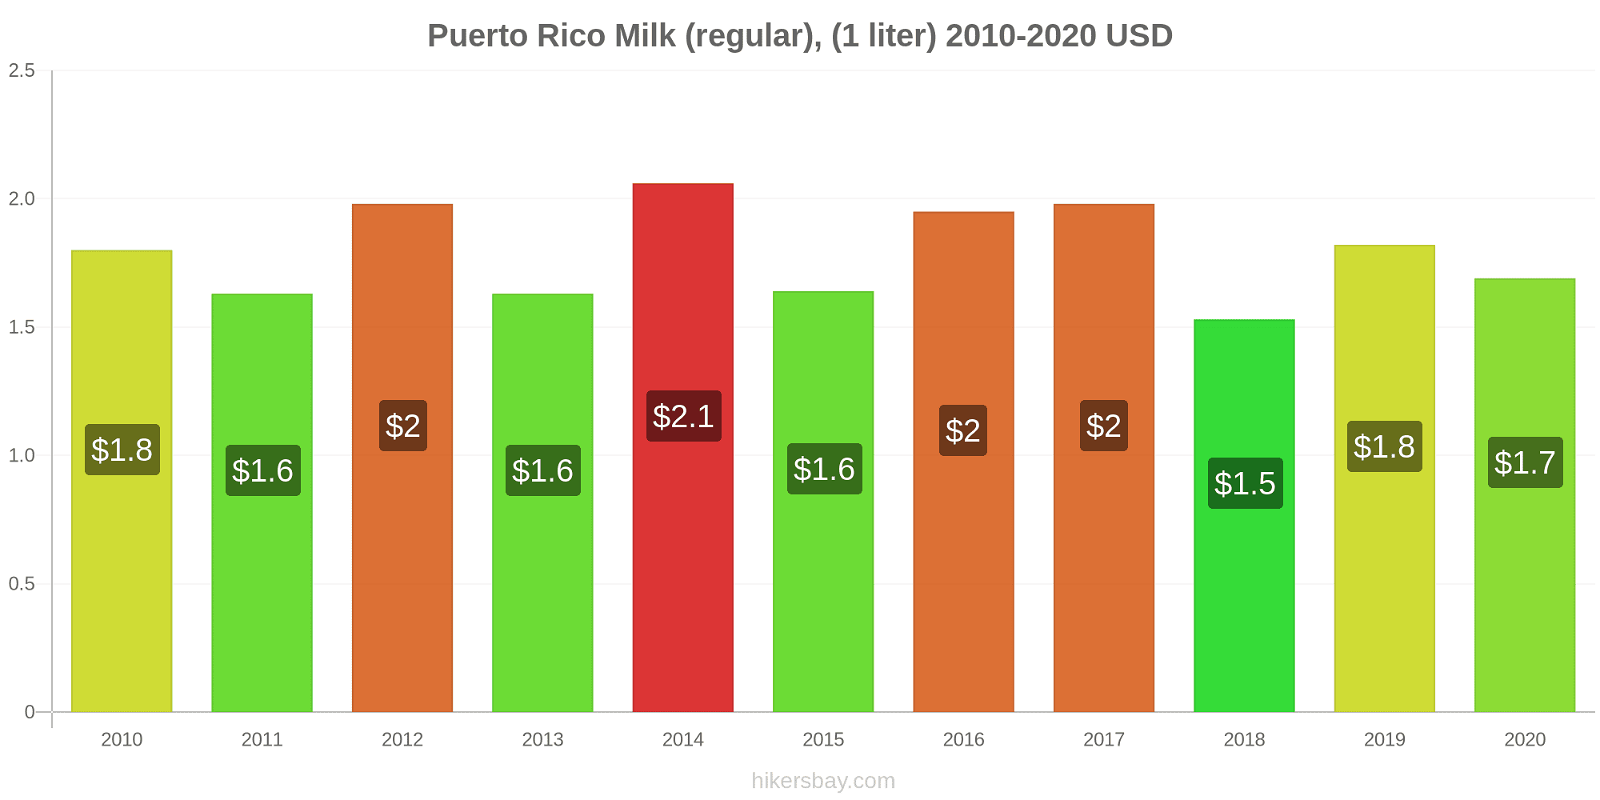 Puerto Rico price changes Milk (regular), (1 liter) hikersbay.com